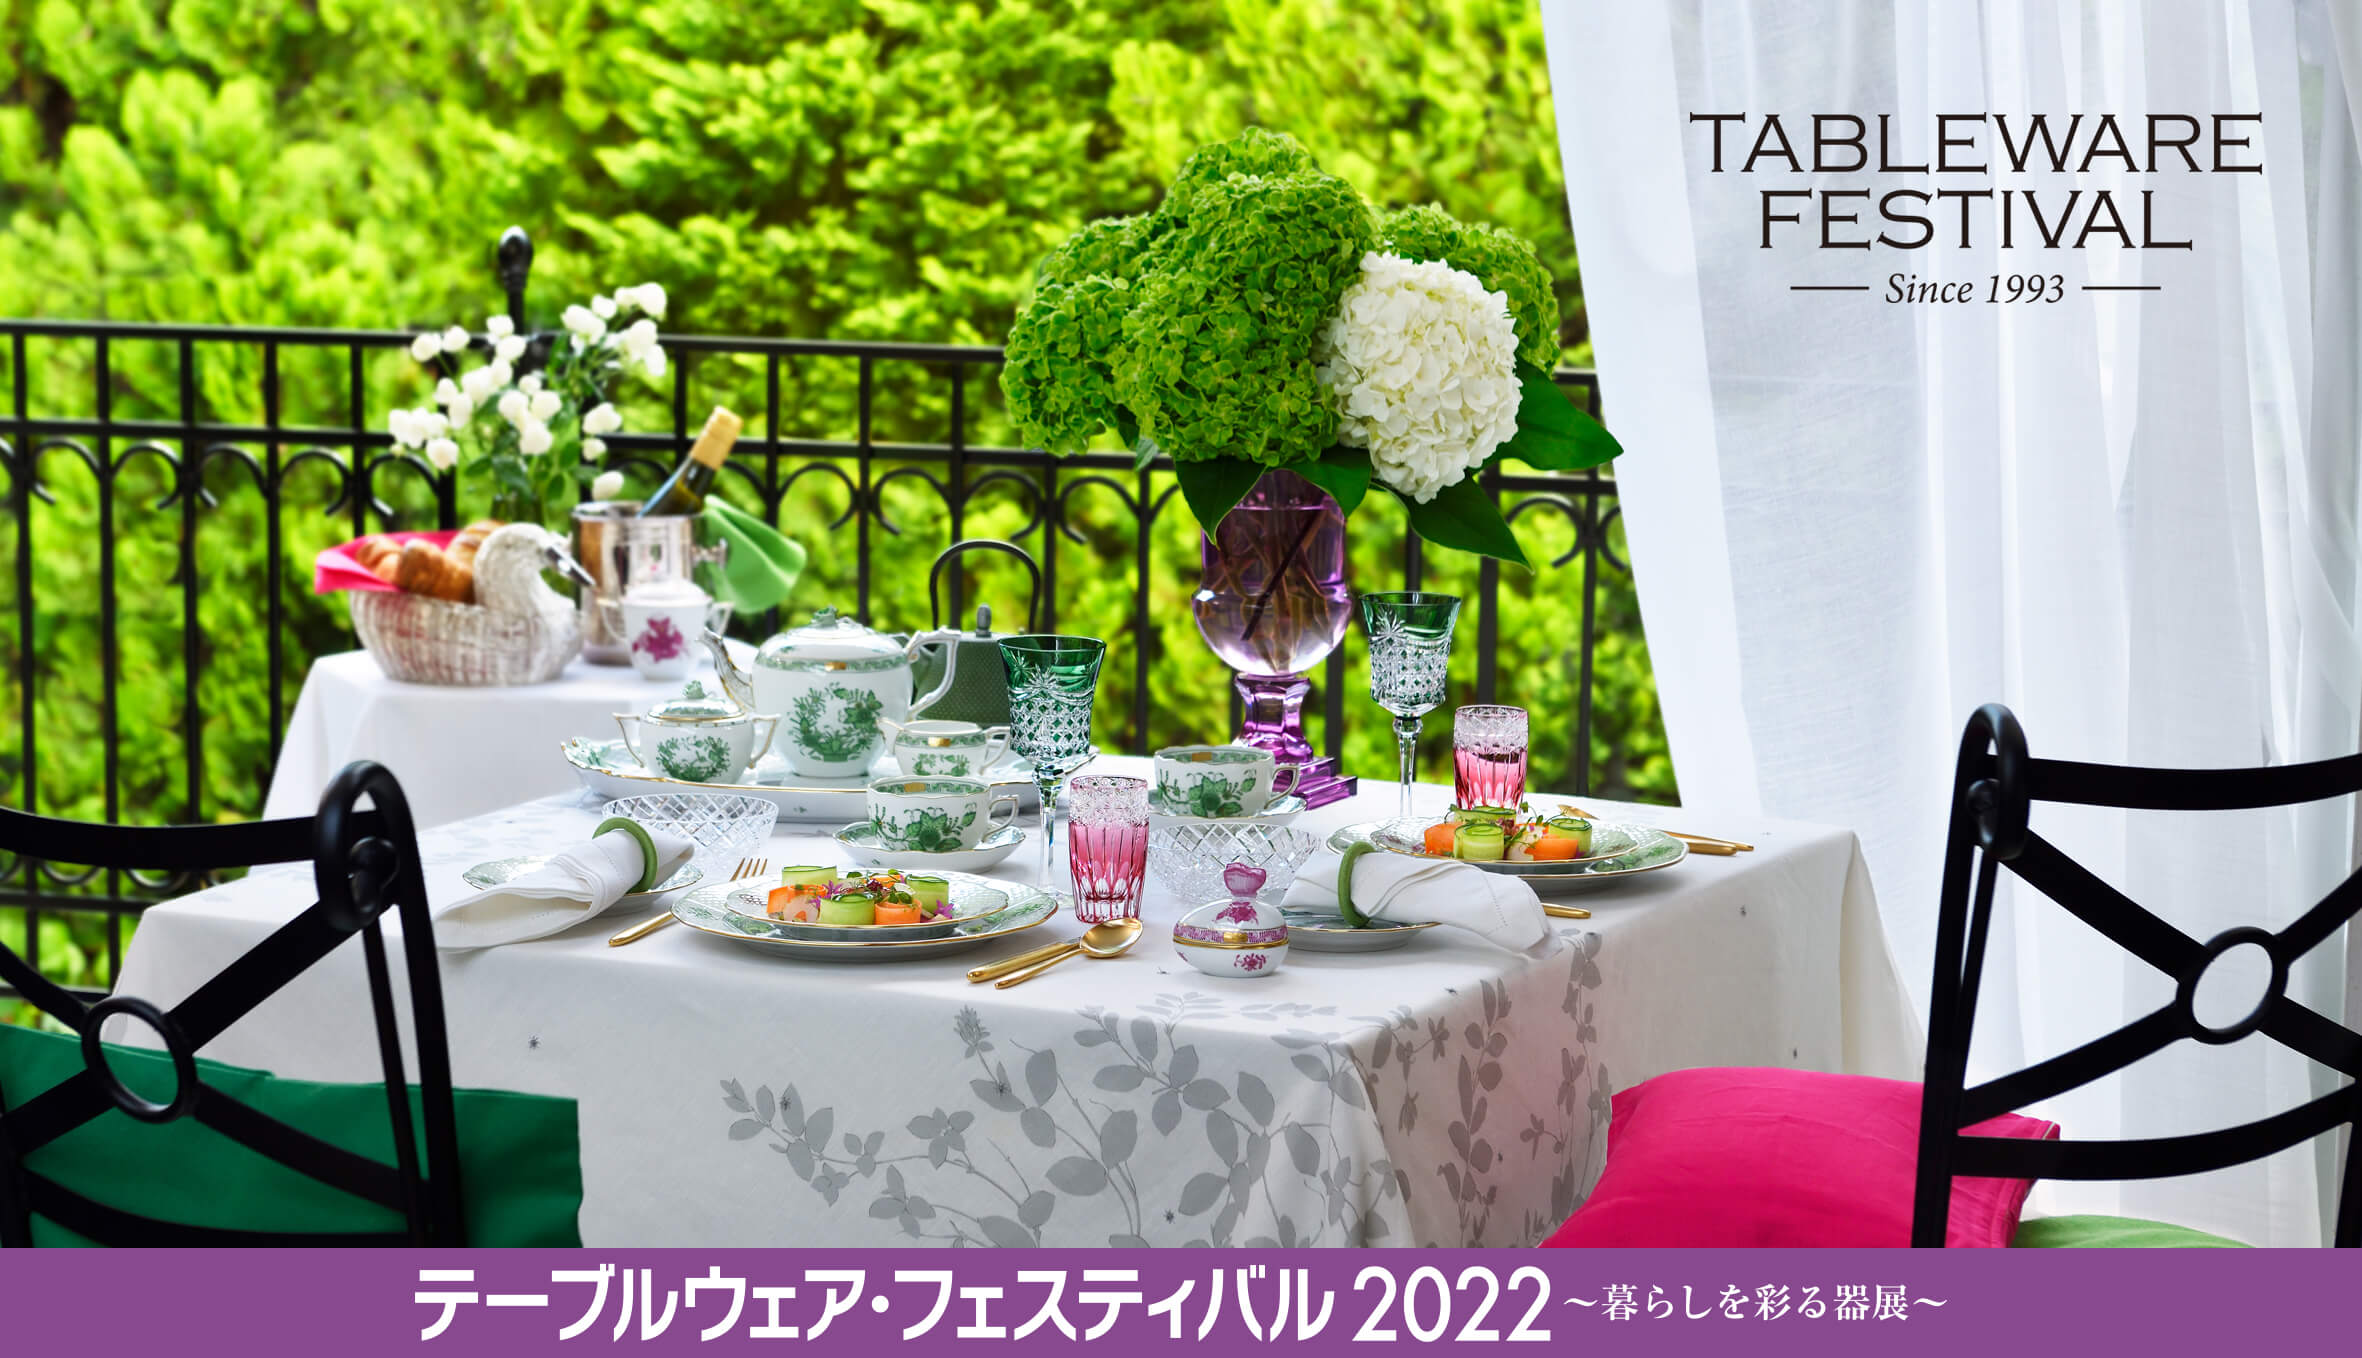 「テーブルウェア･フェスティバル」について